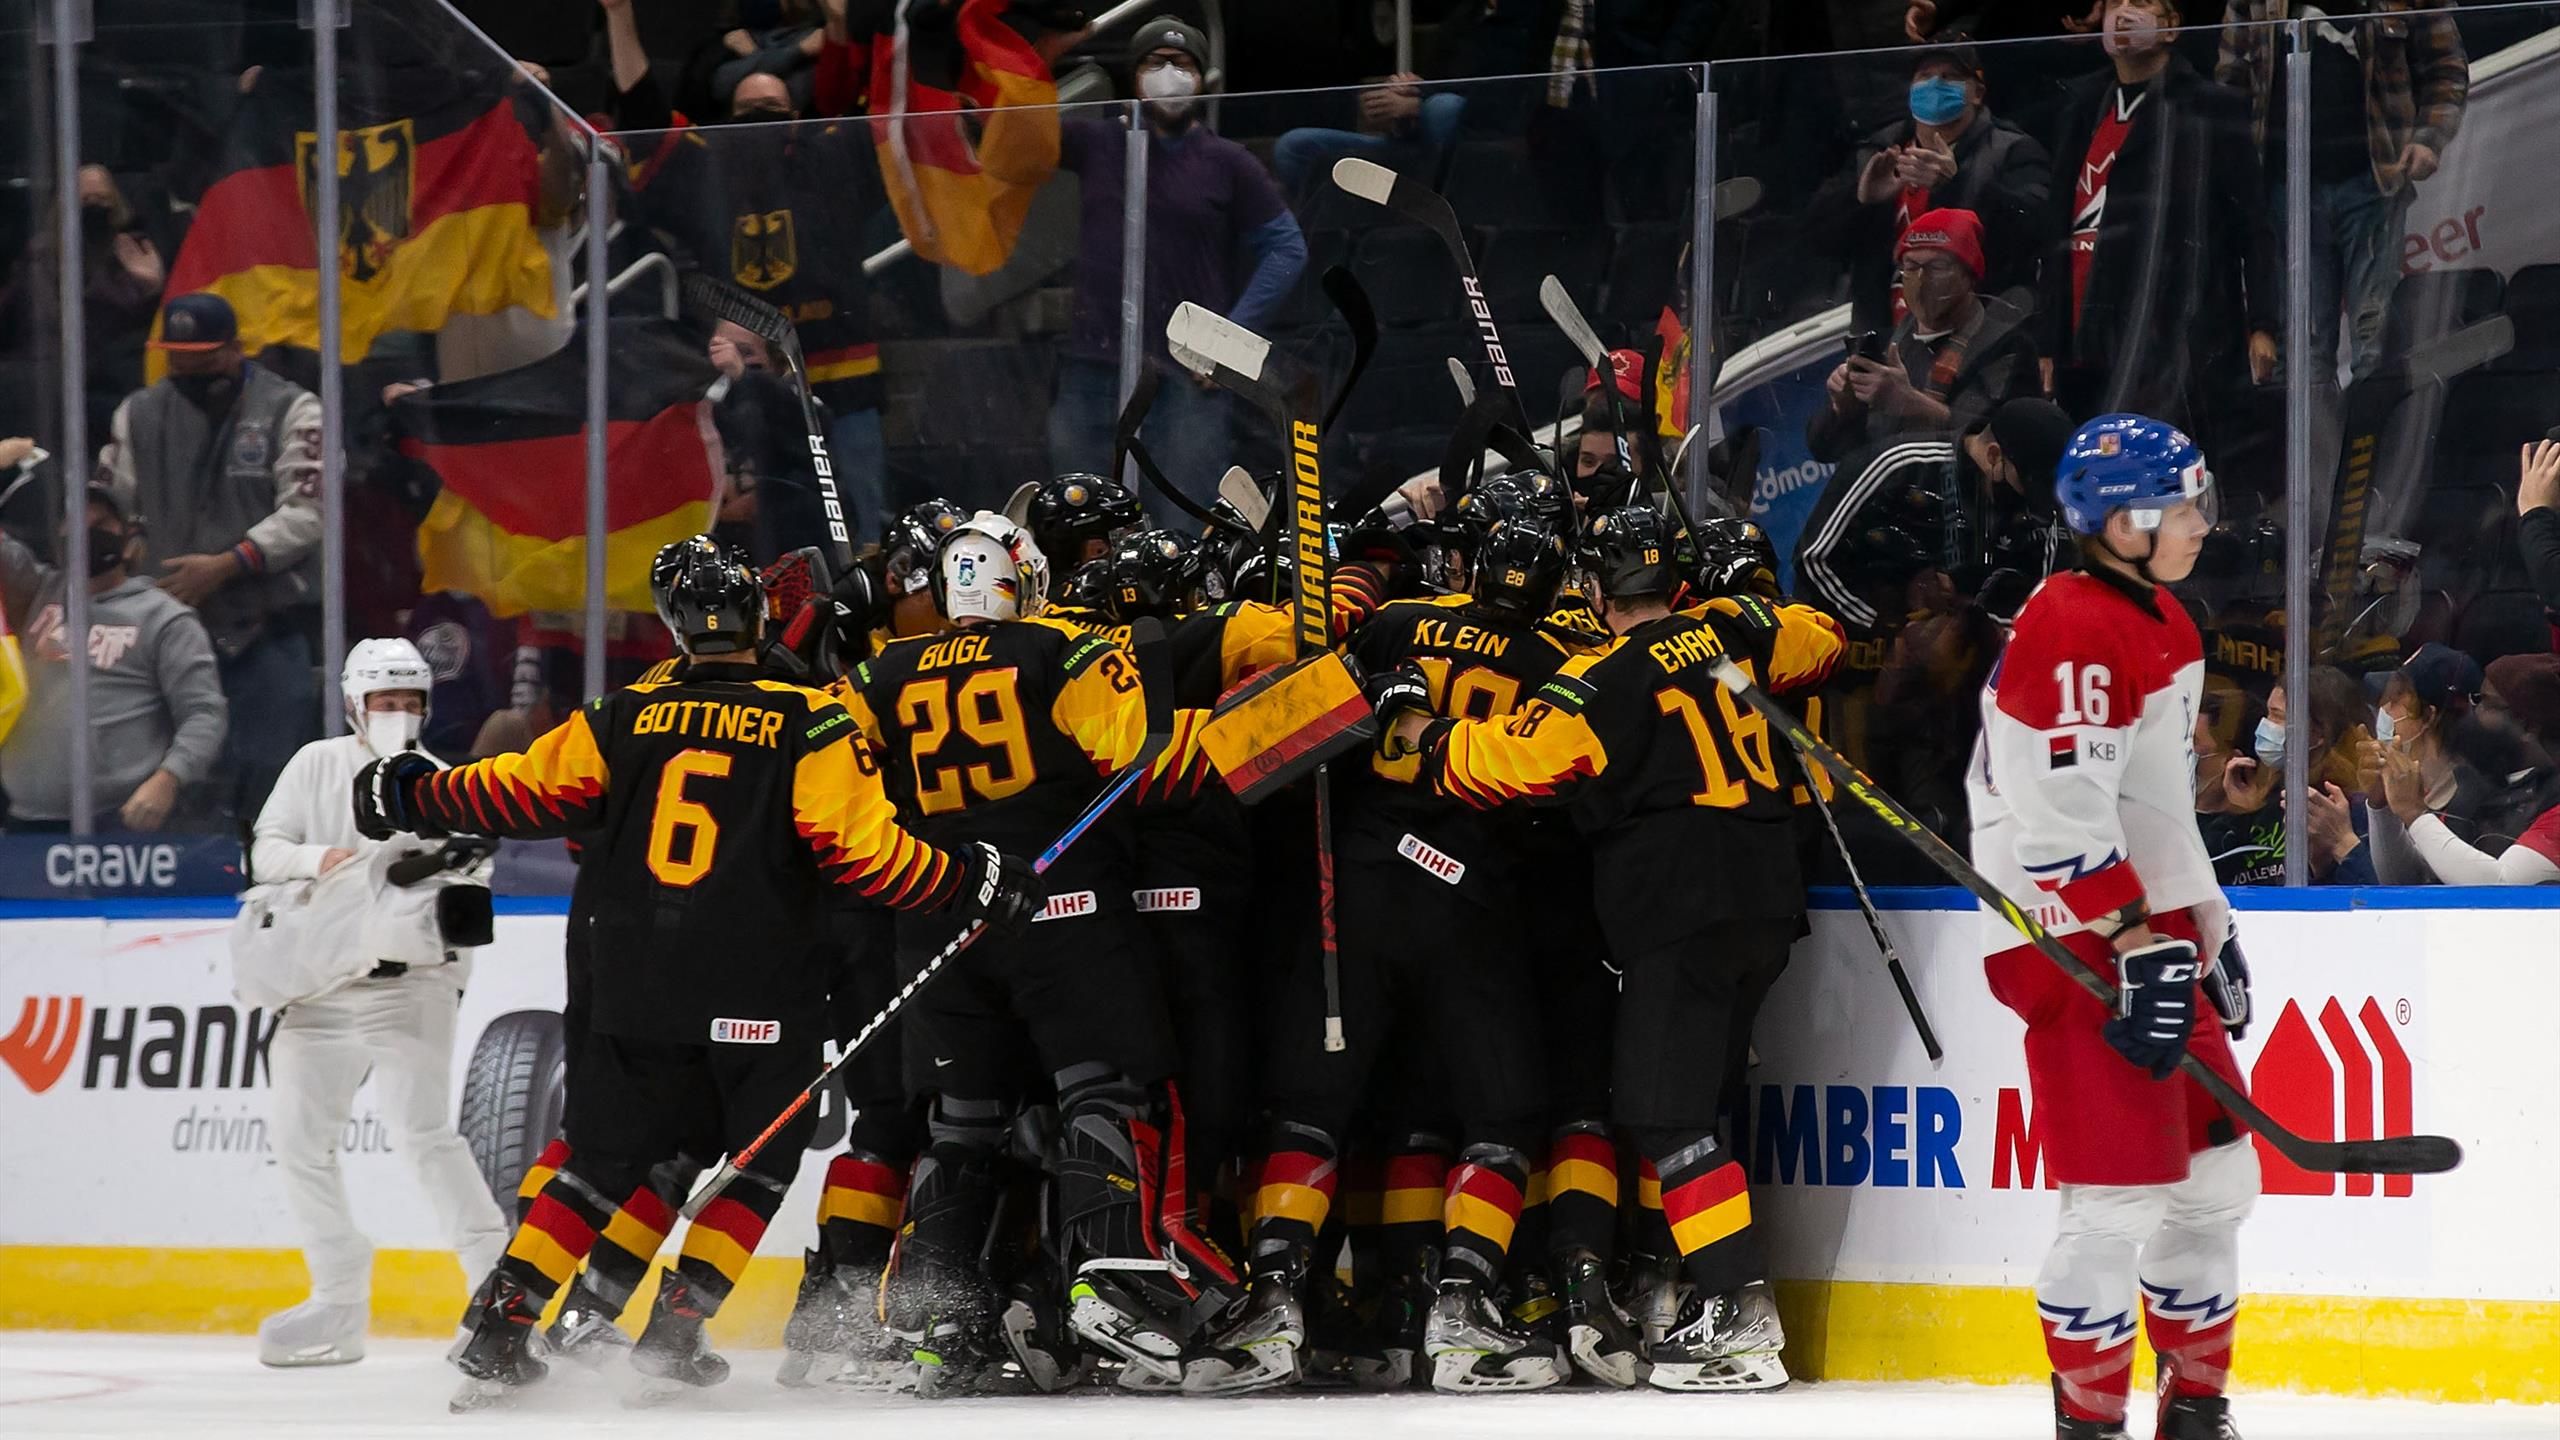 U20-WM Deutsche Eishockey-Junioren schlagen Tschechien und holen ersten Sieg in Kanada